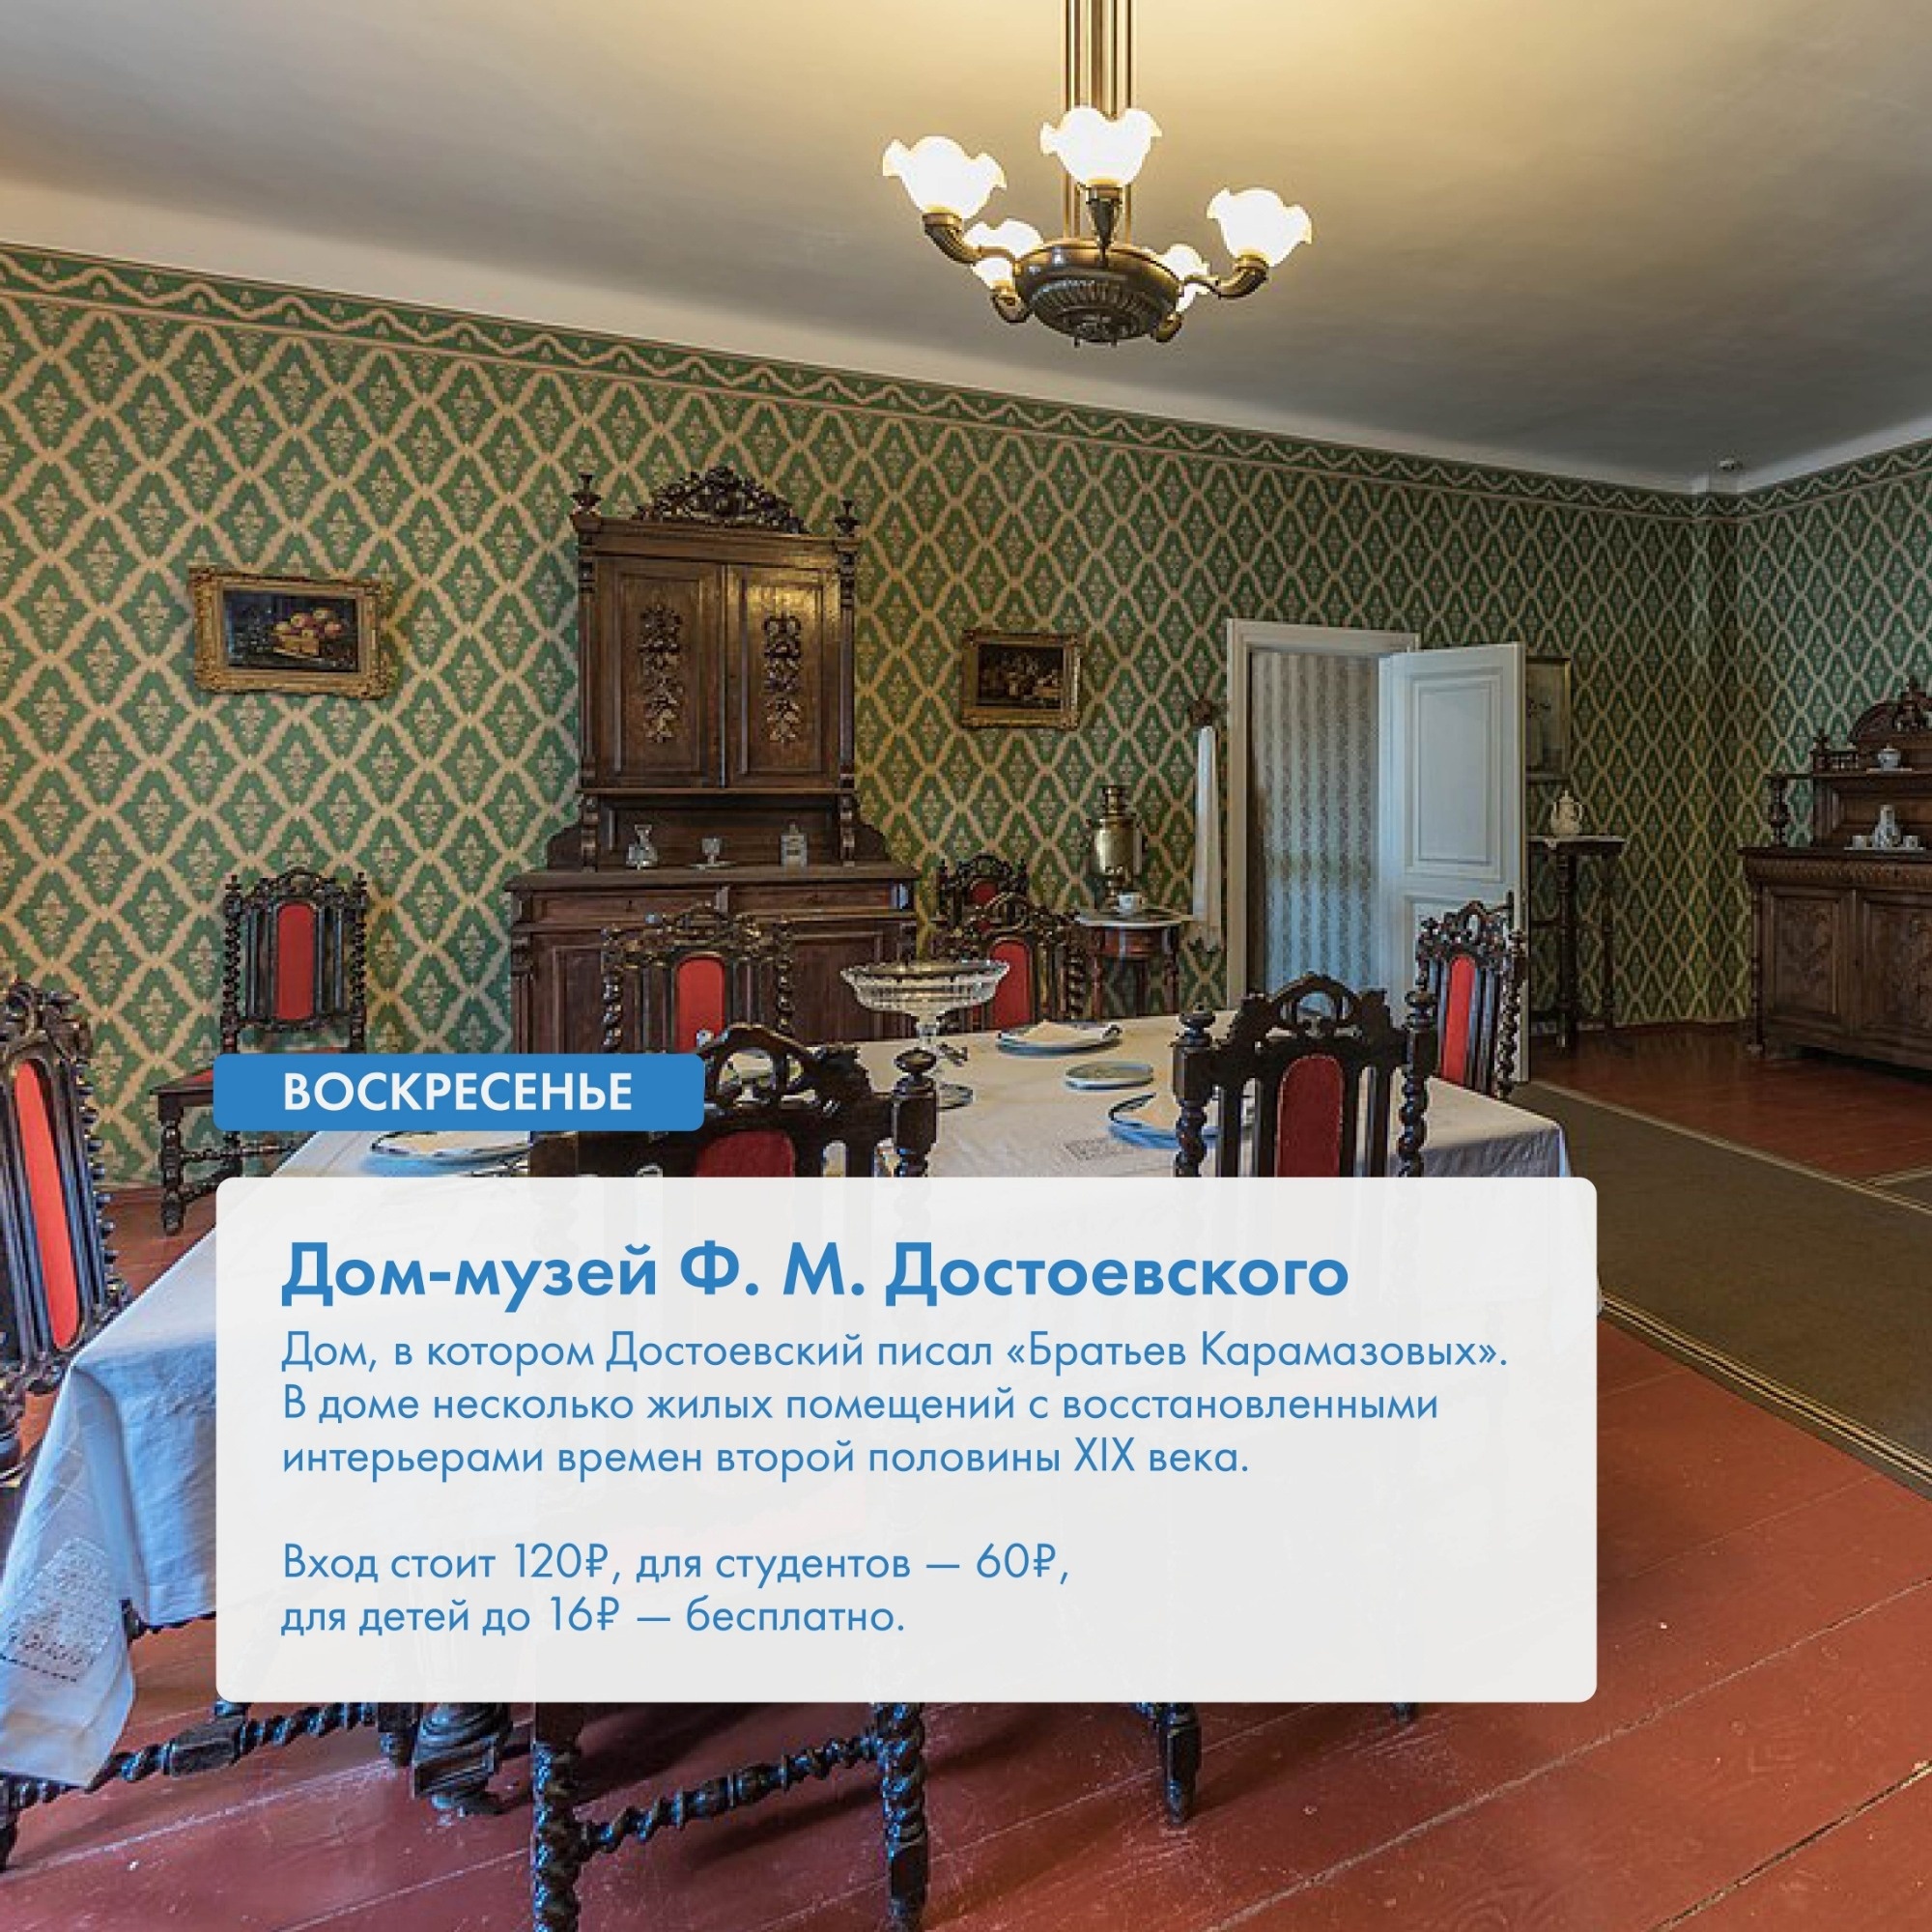 Дом музей Достоевского